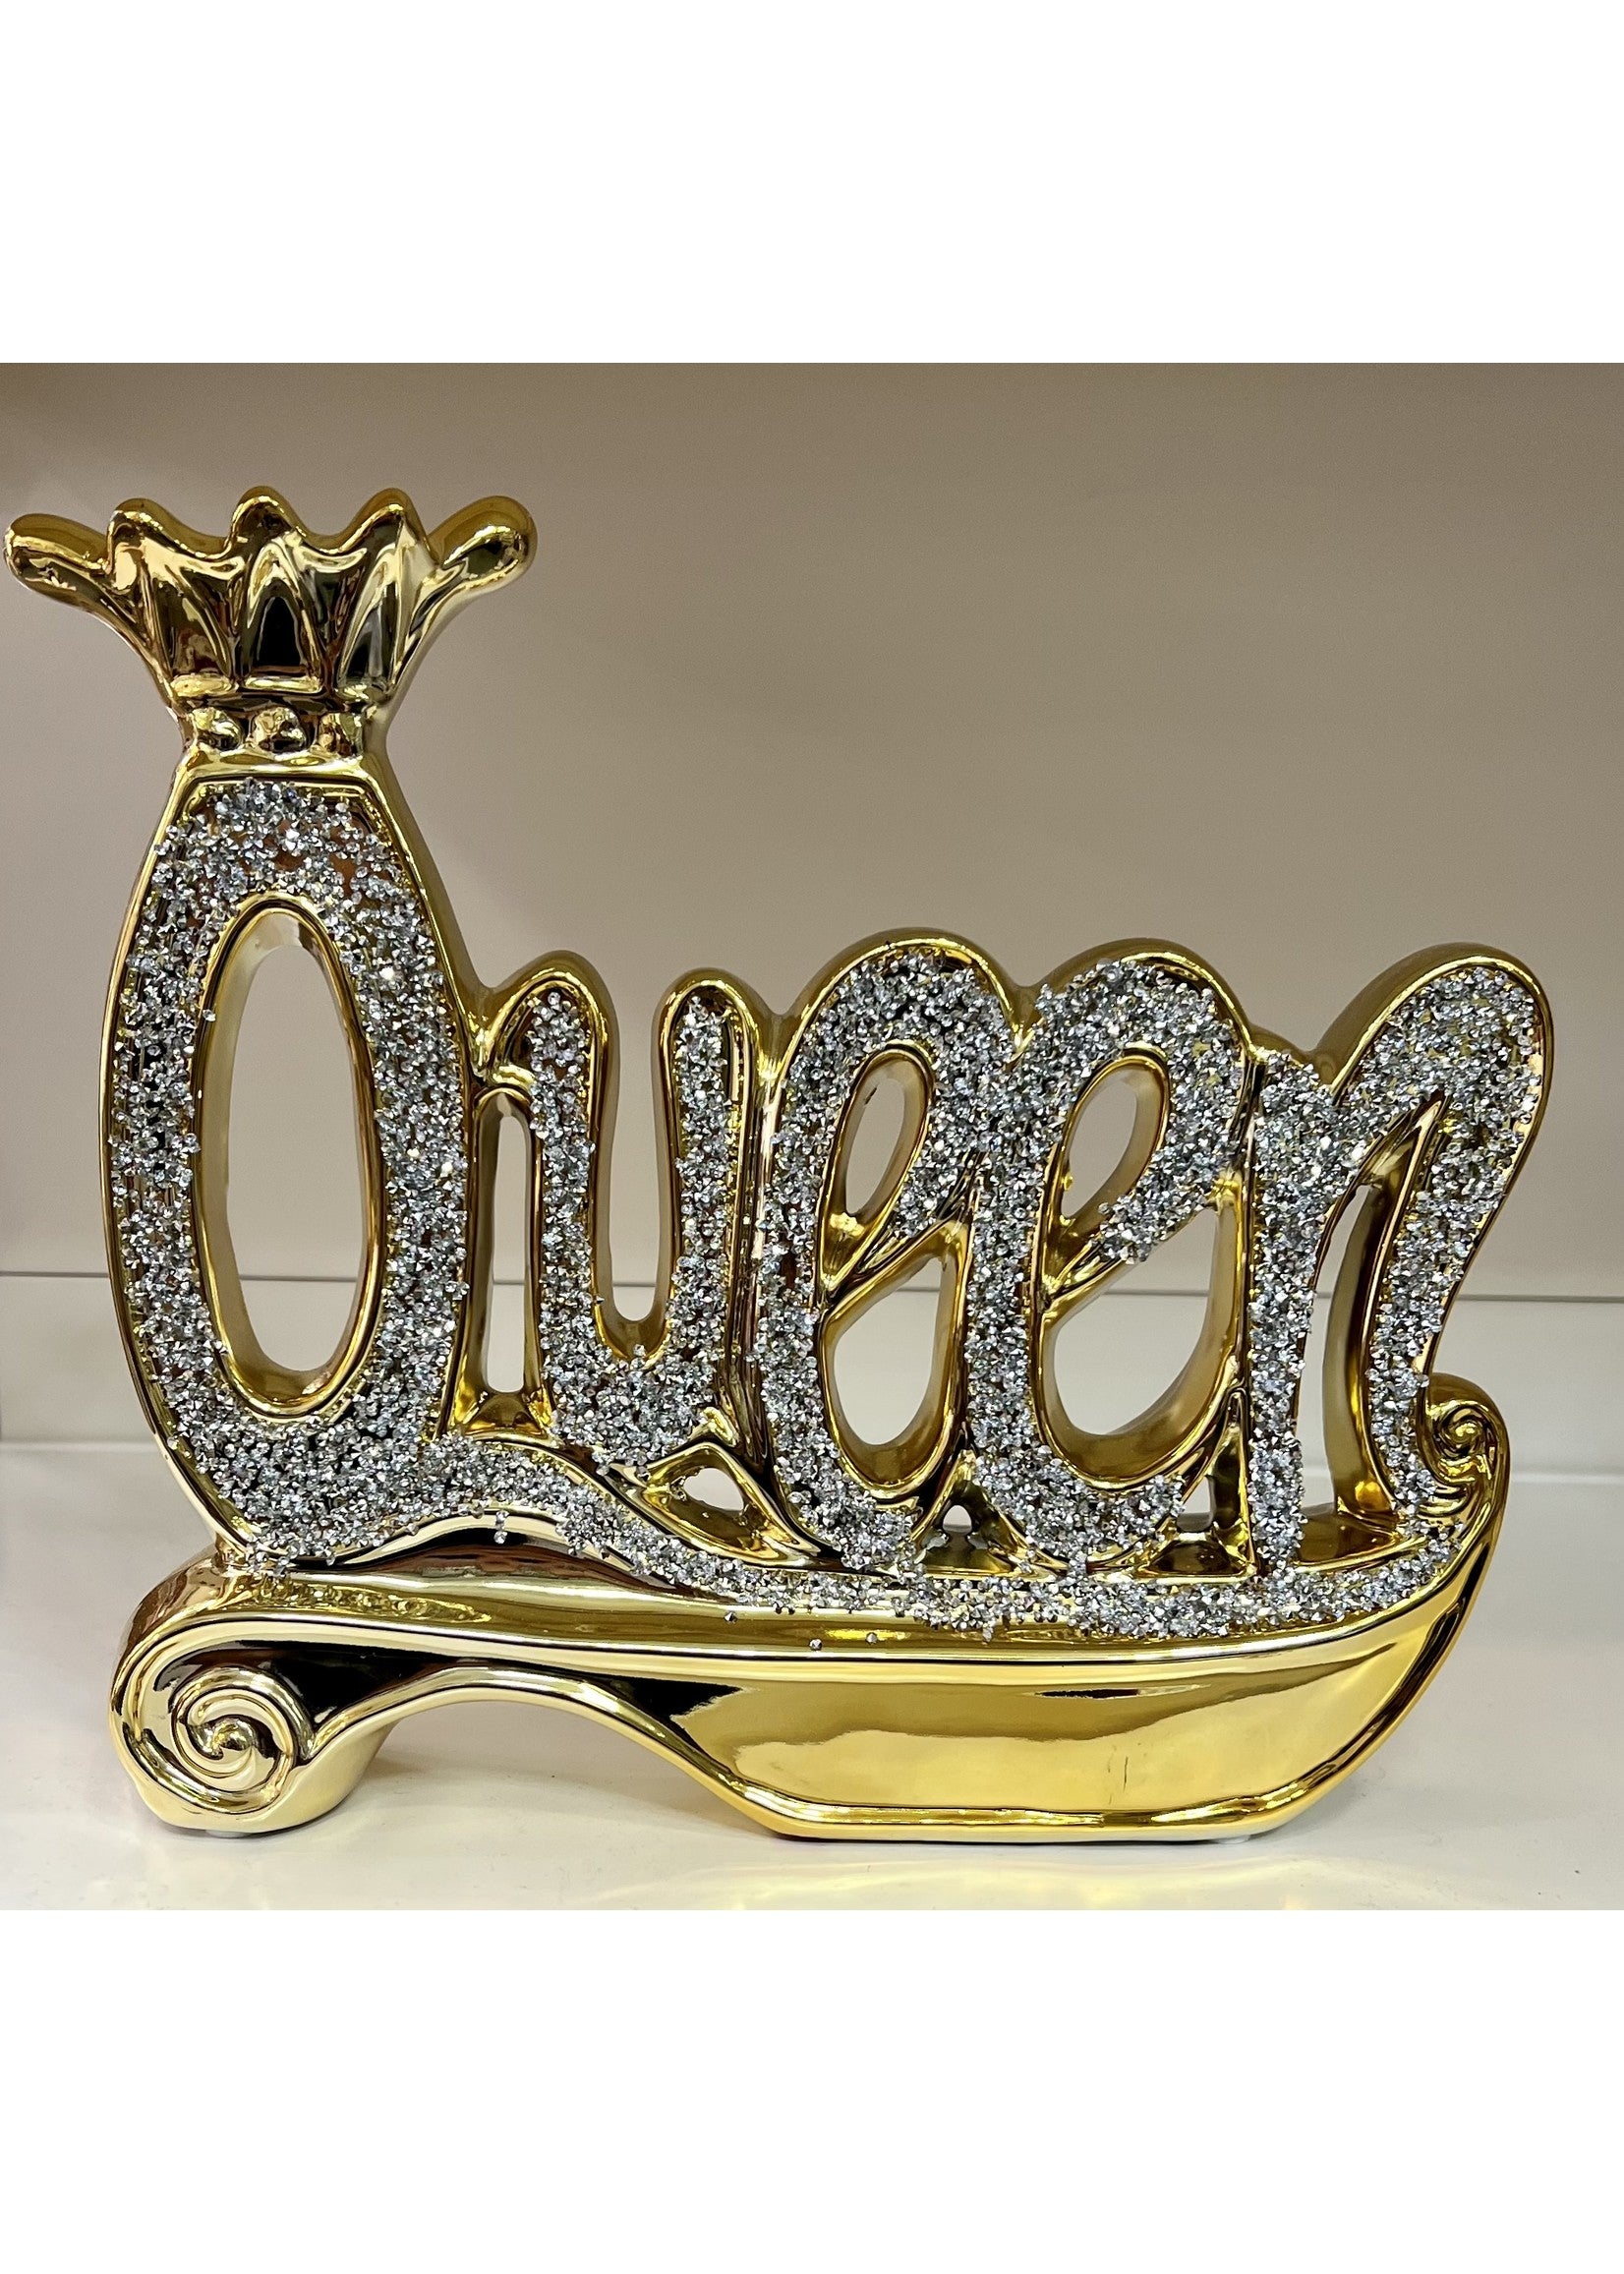 Décoration Queen gold